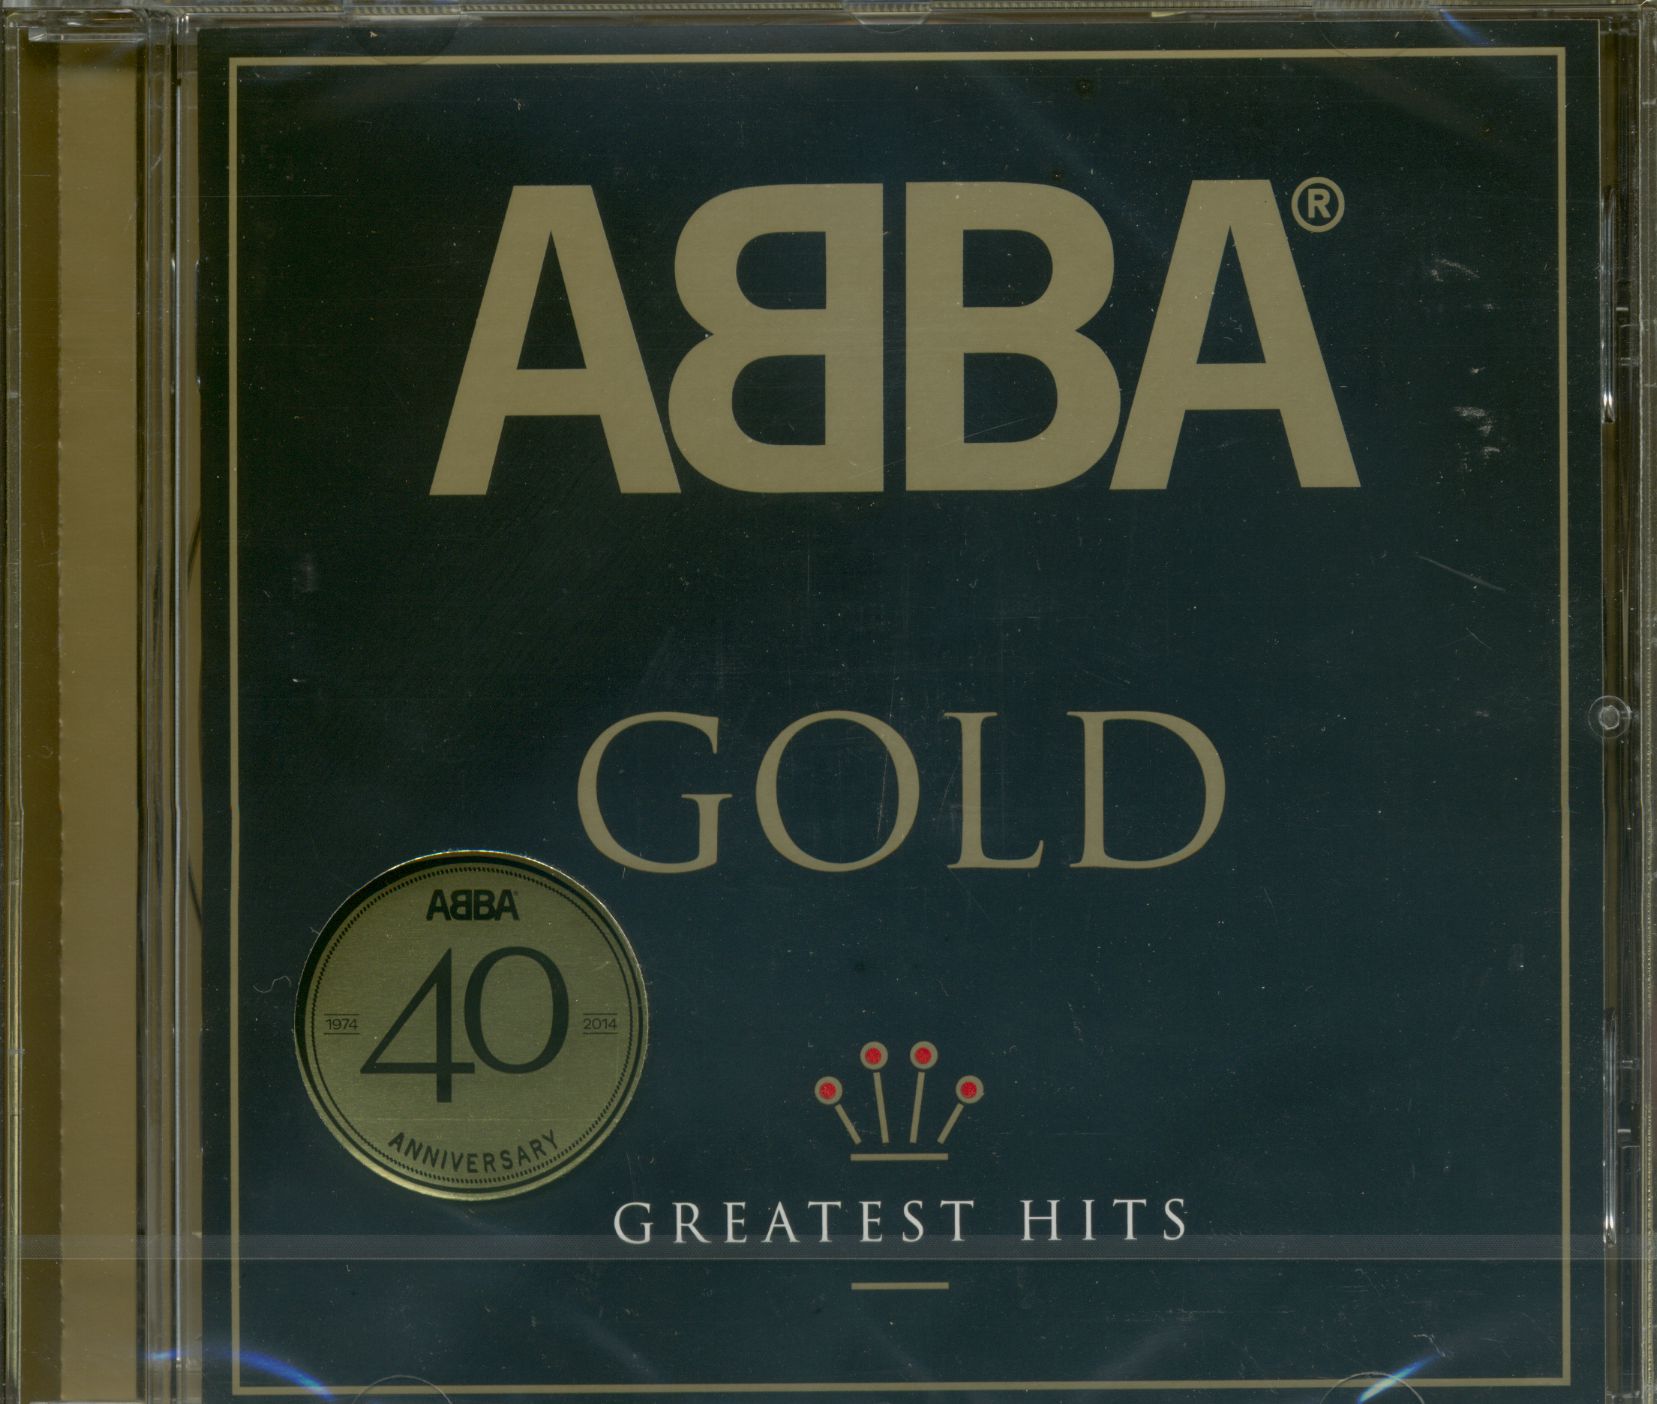 アバ・ゴールド 40周年記念スチールブック・エディション - CD